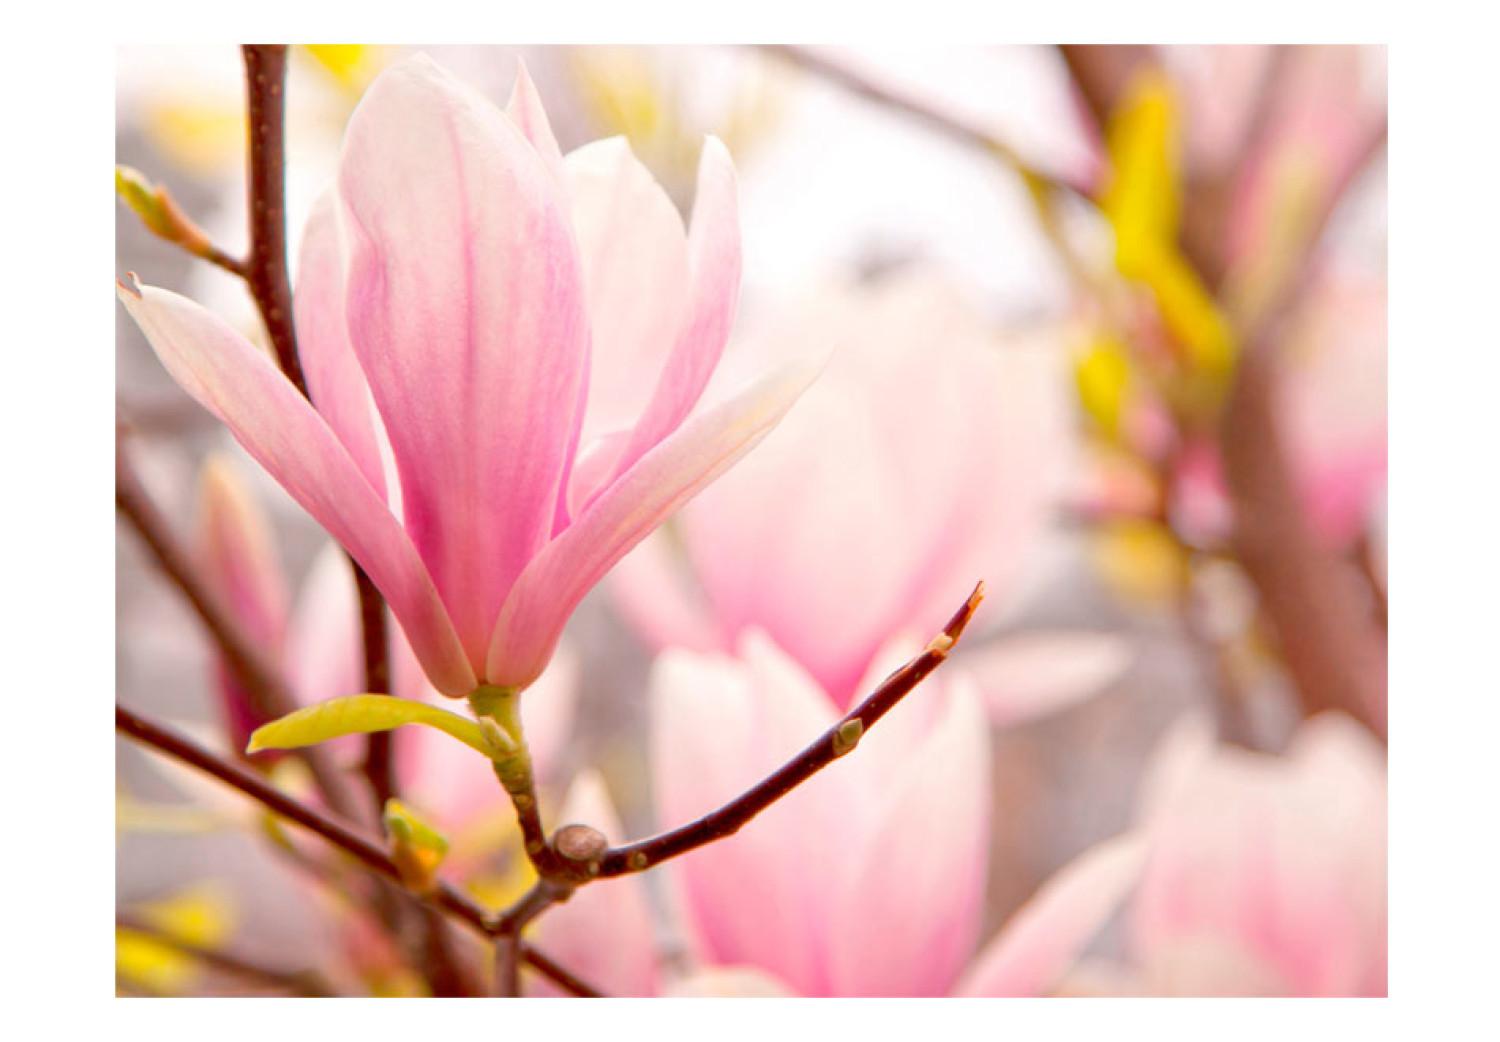 Fotomural Magnolia en flor - motivo floral con acercamiento a flor de magnolia